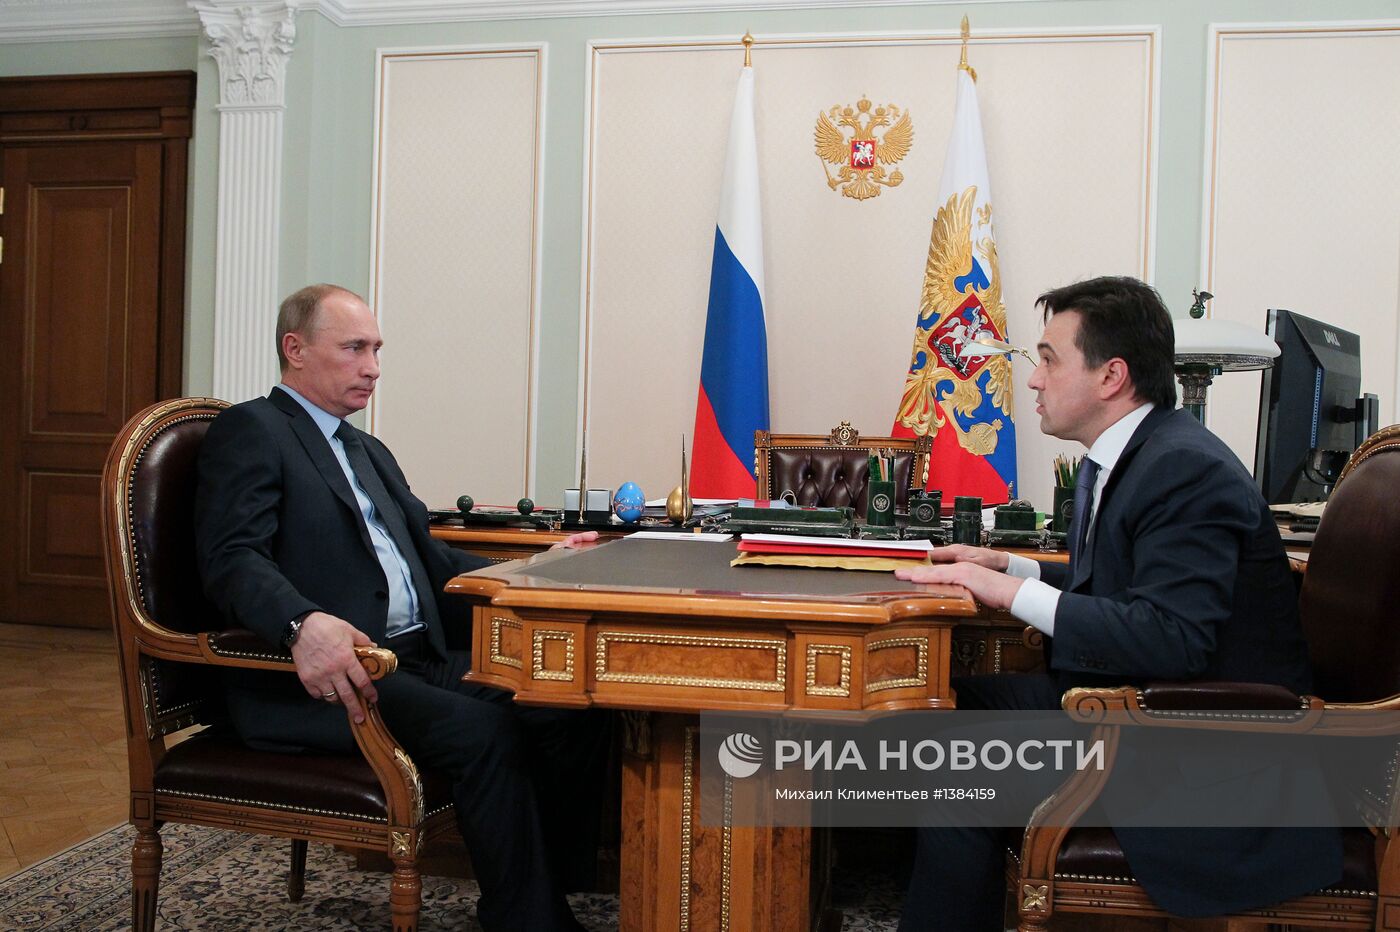 Встреча Владимира Путина с Андреем Воробьевым в Ново-Огарево